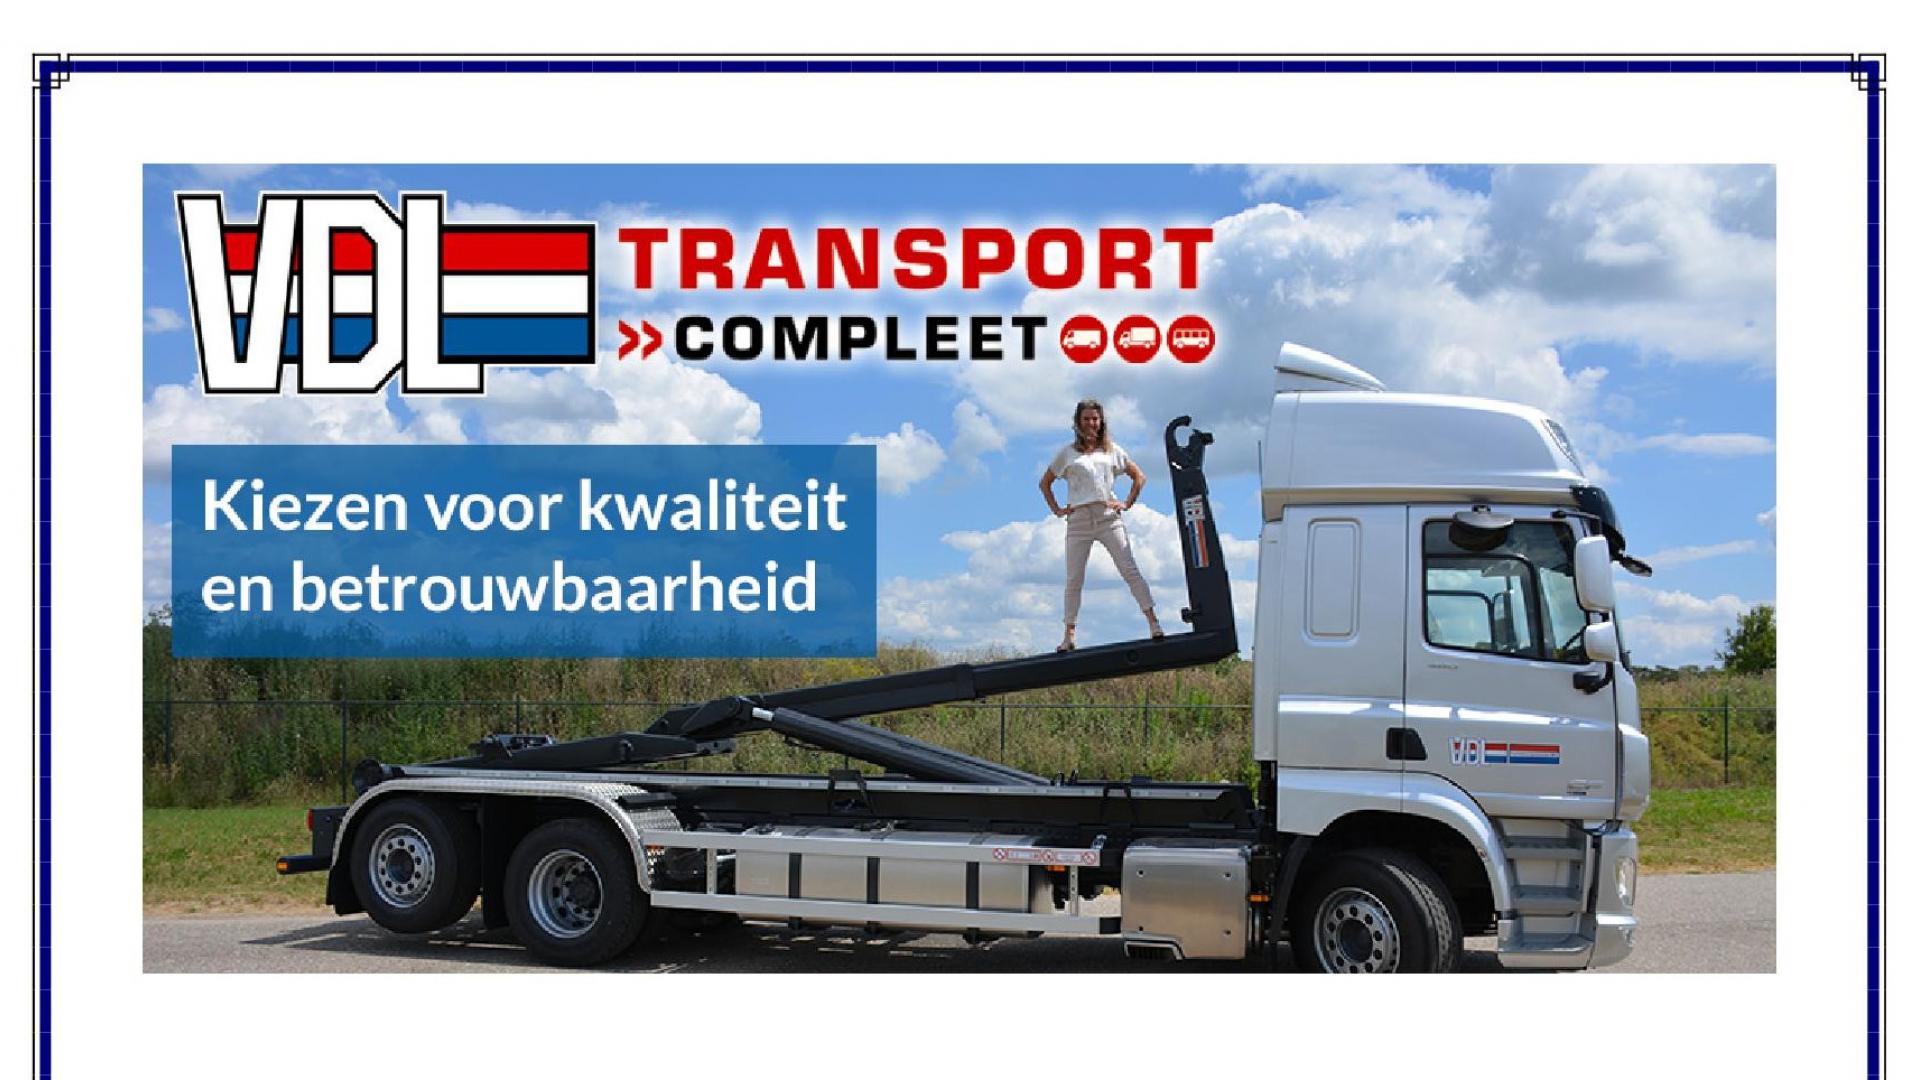 Transport Compleet 2019 in Gorinchem